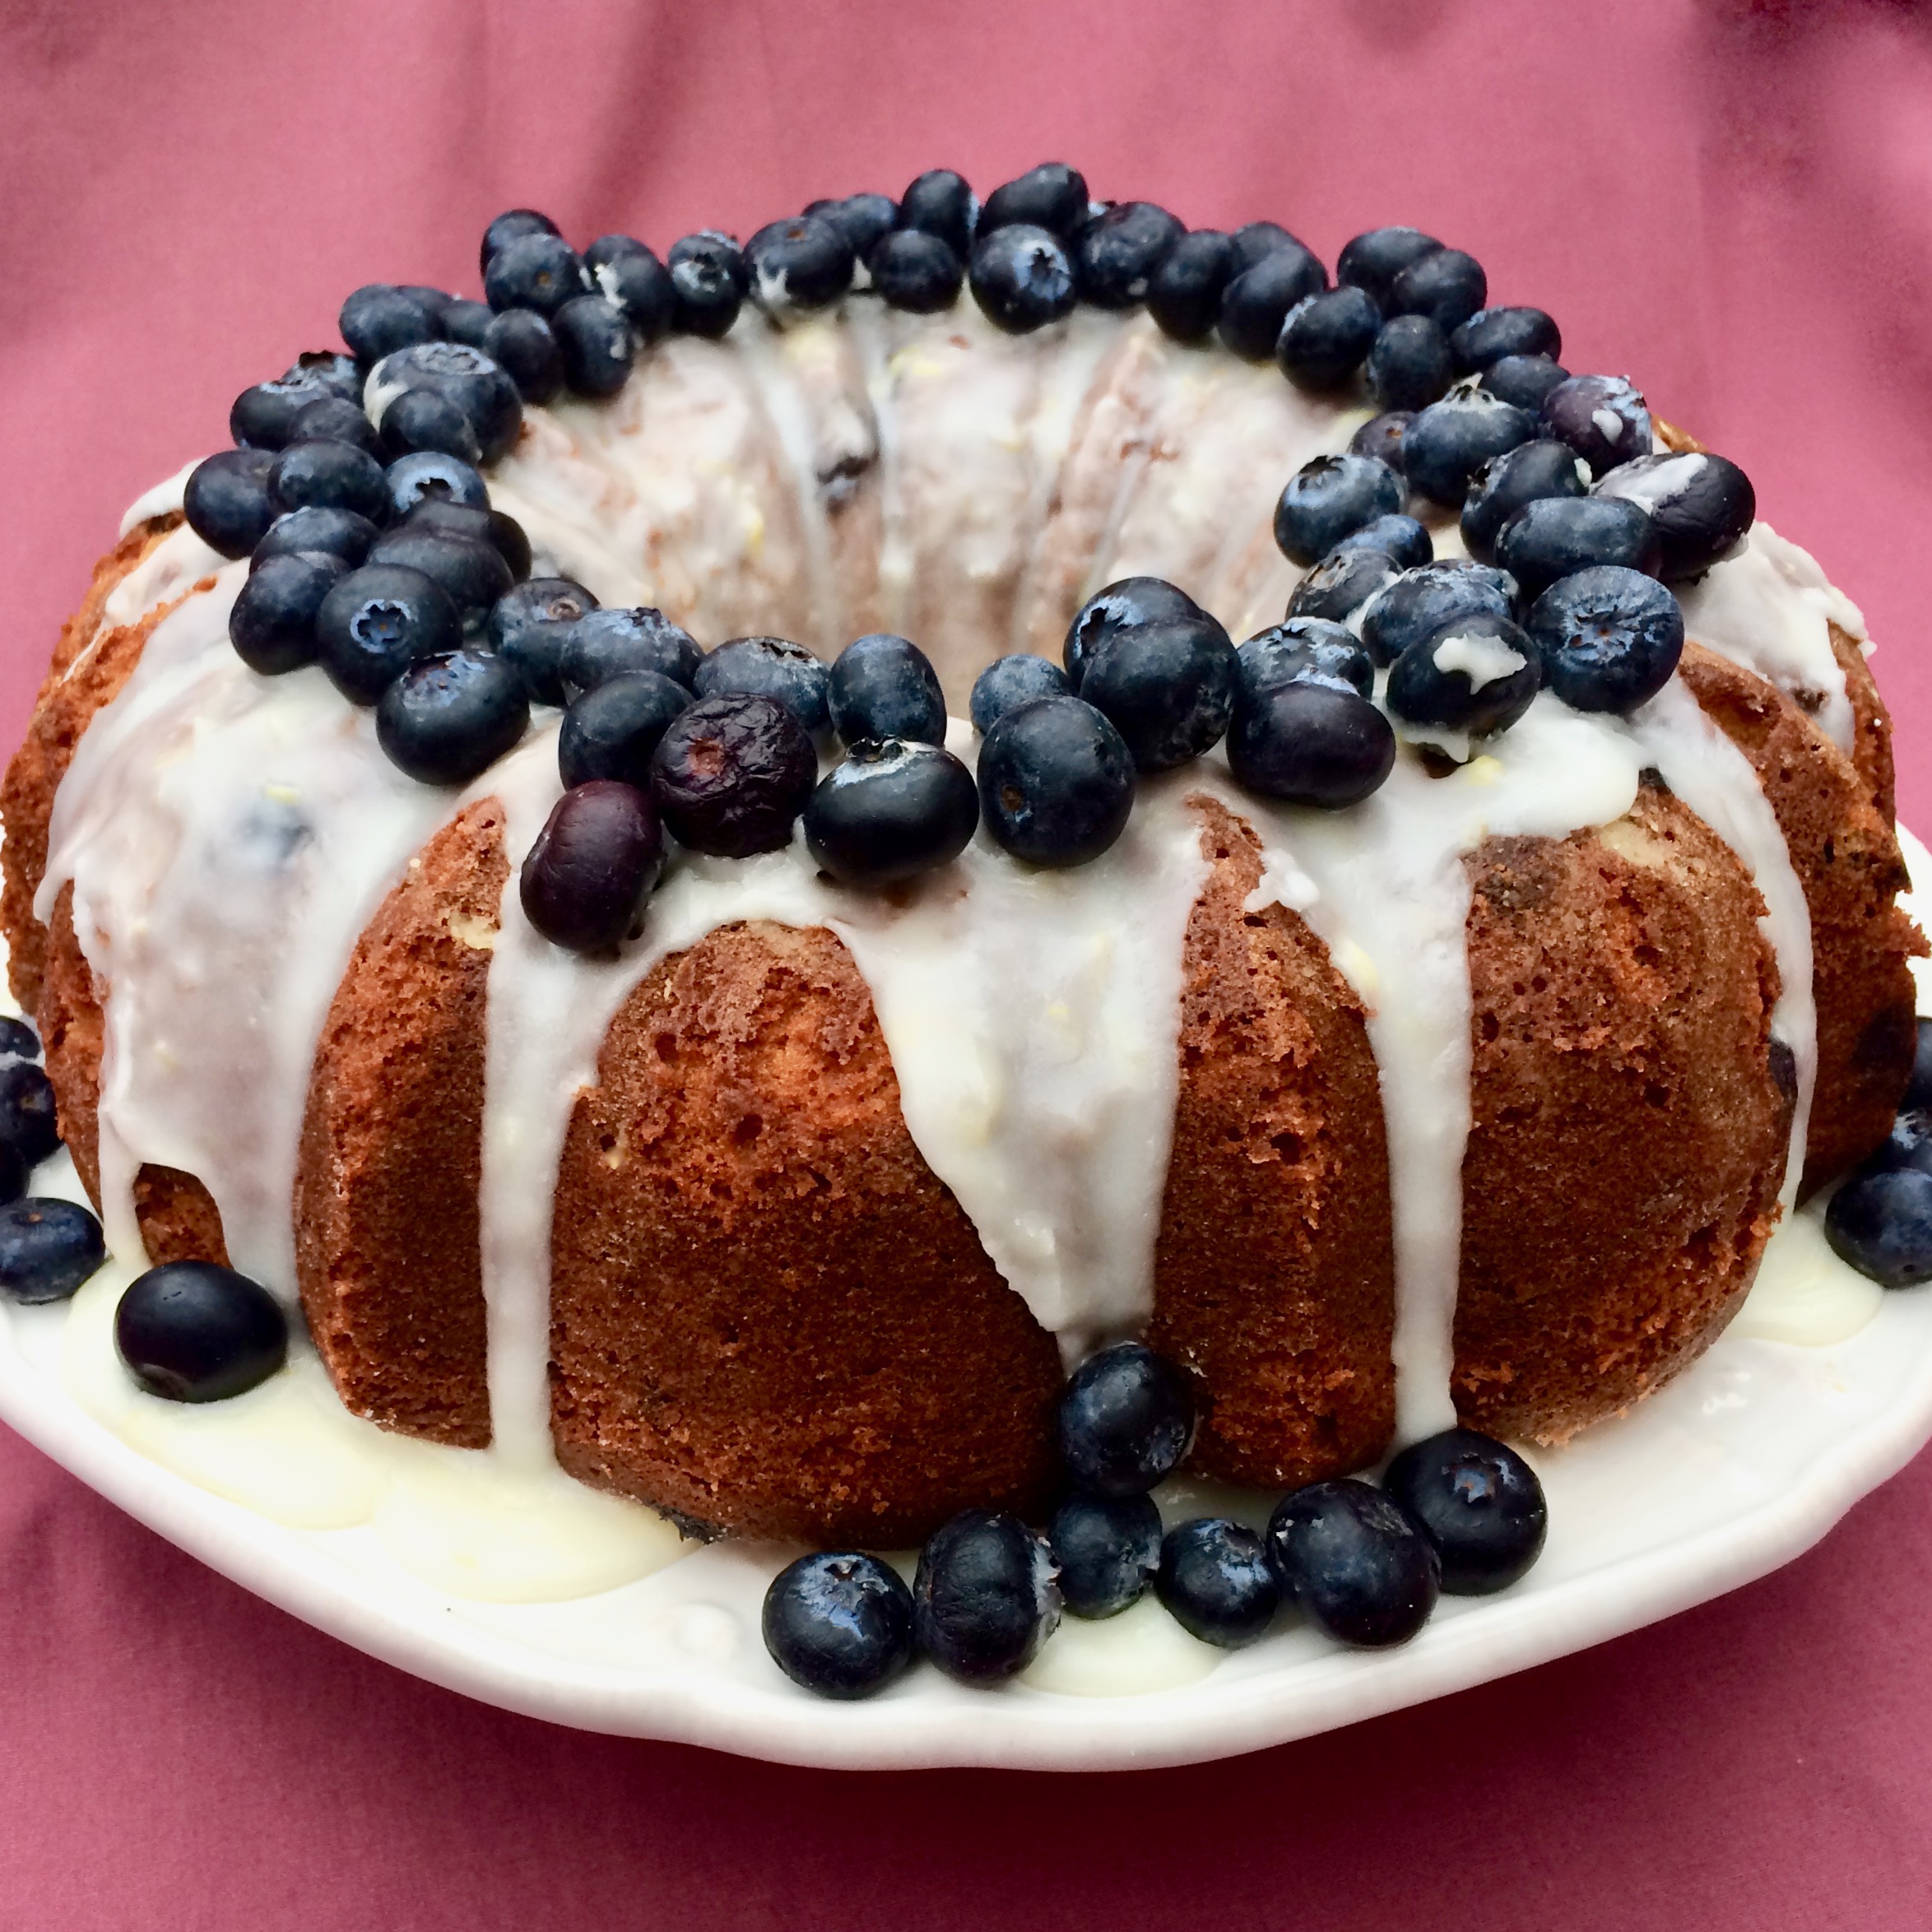 Lemon-Blueberry Bundt® Cake